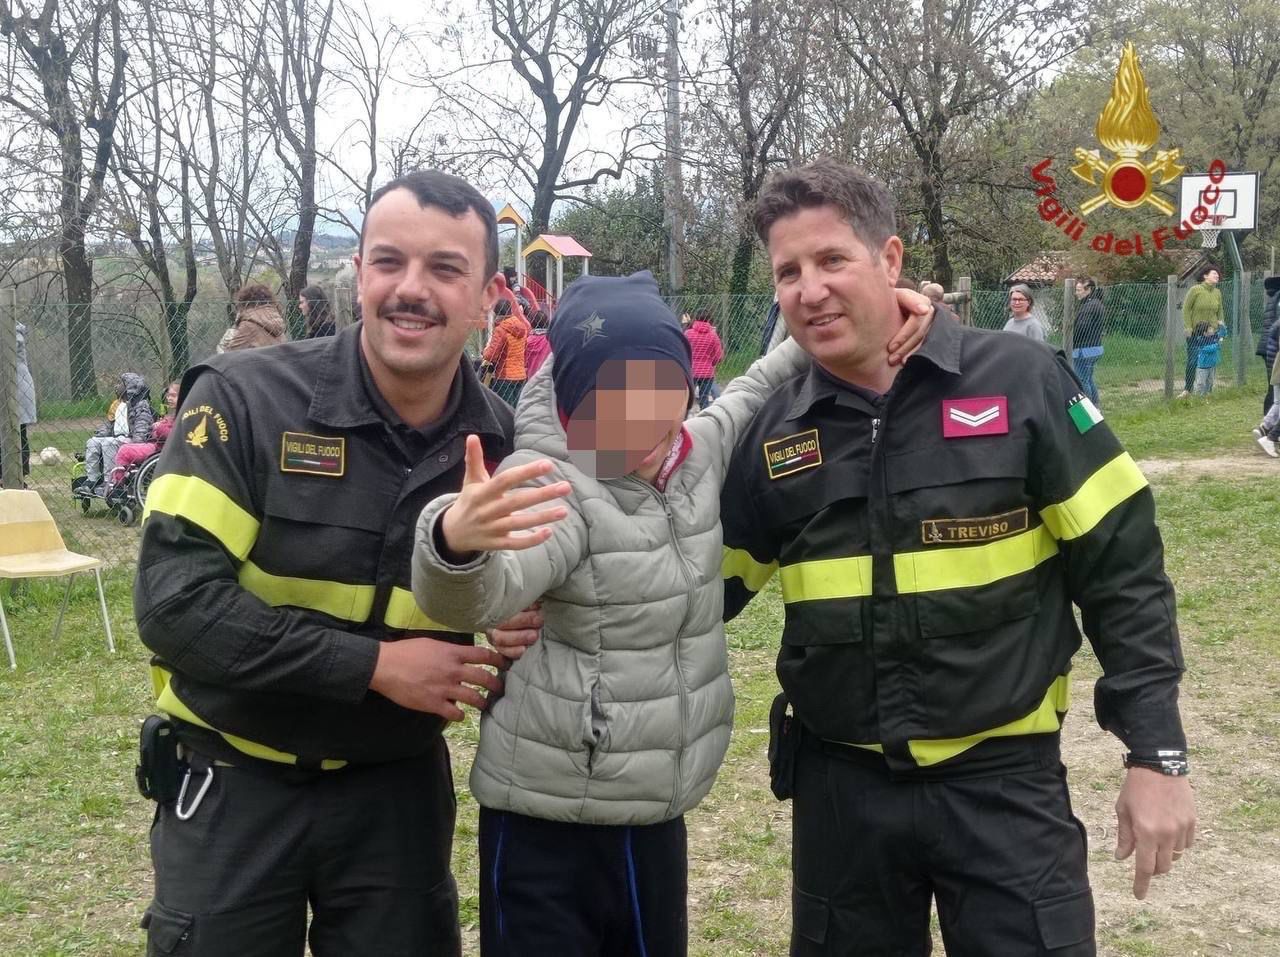 Treviso – I Vigili del fuoco donano un uovo di Pasqua agli ospiti della struttura dell’Associazione “La nostra famiglia”